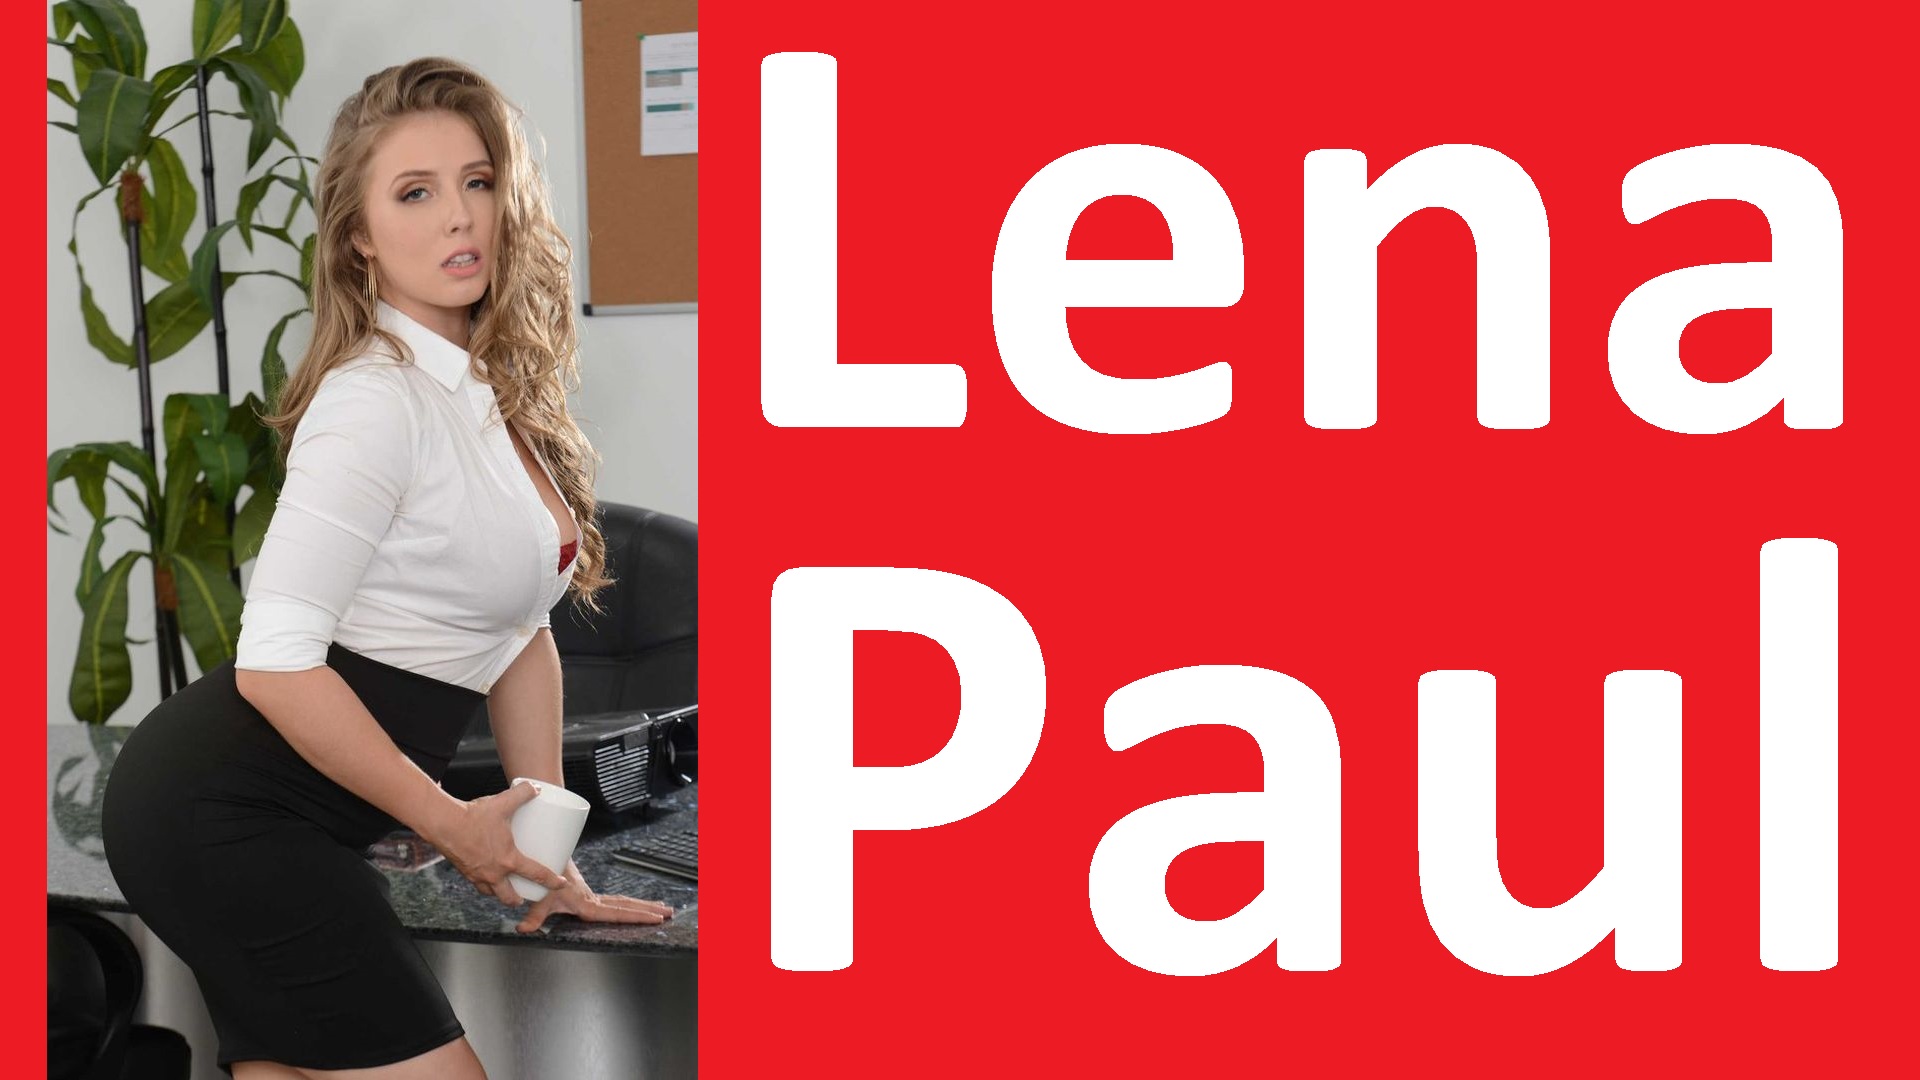 Lena paul public